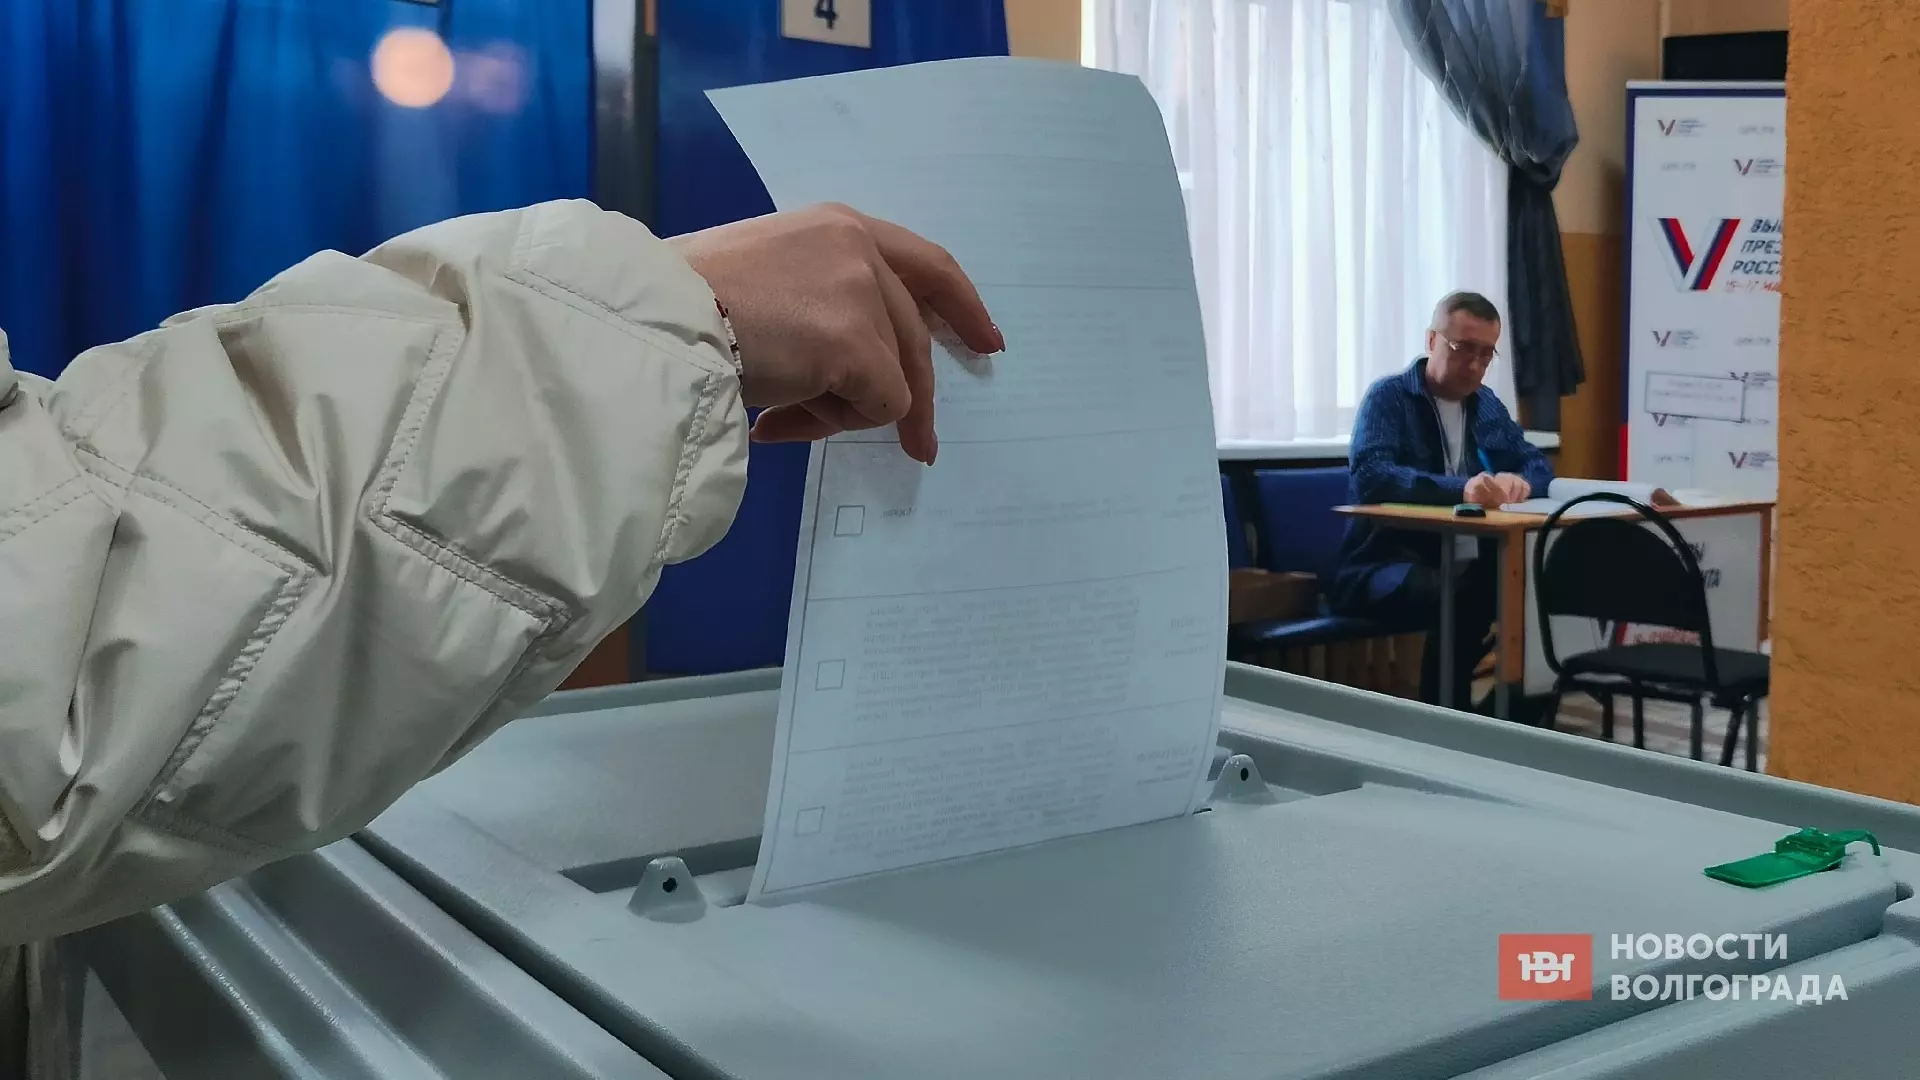 Как в Волгограде прошел первый день выборов президента